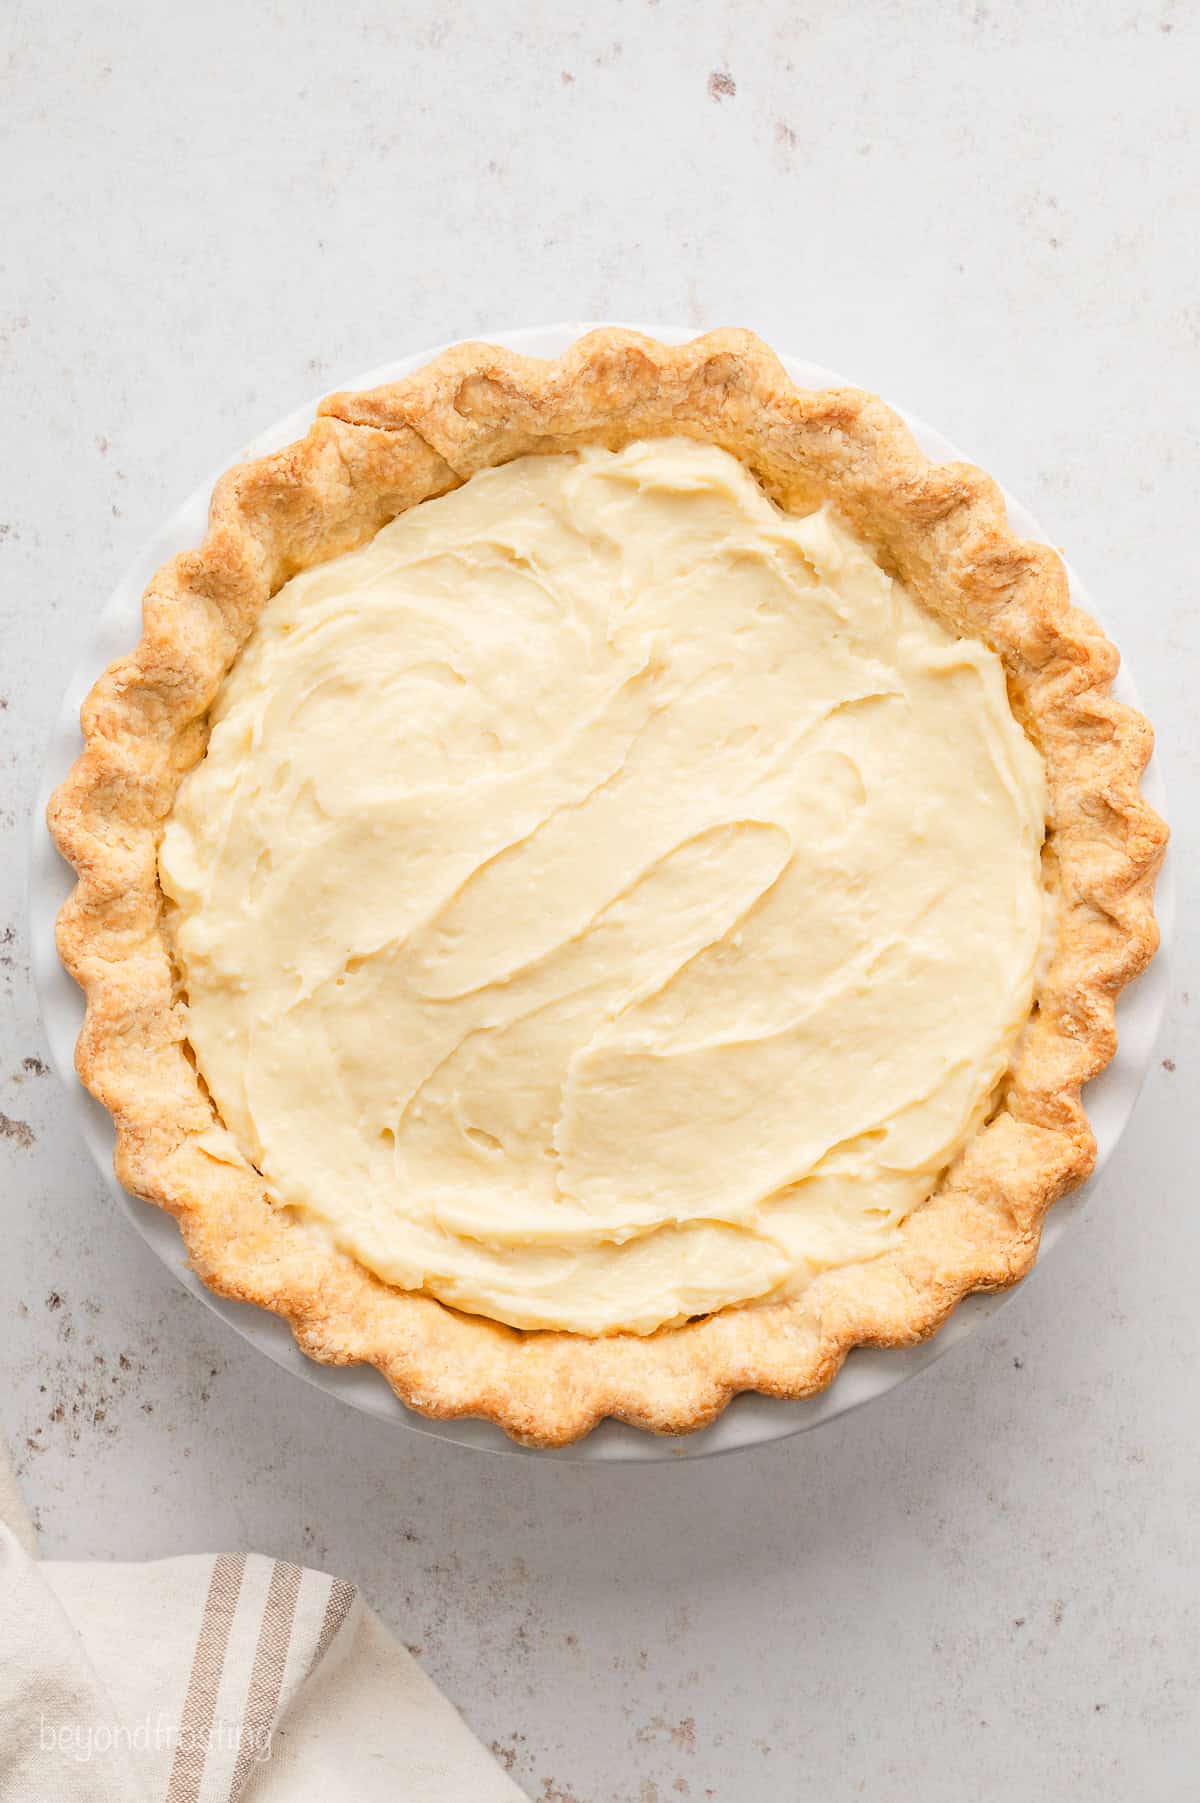 Assembled banana cream pie in a pie crust.